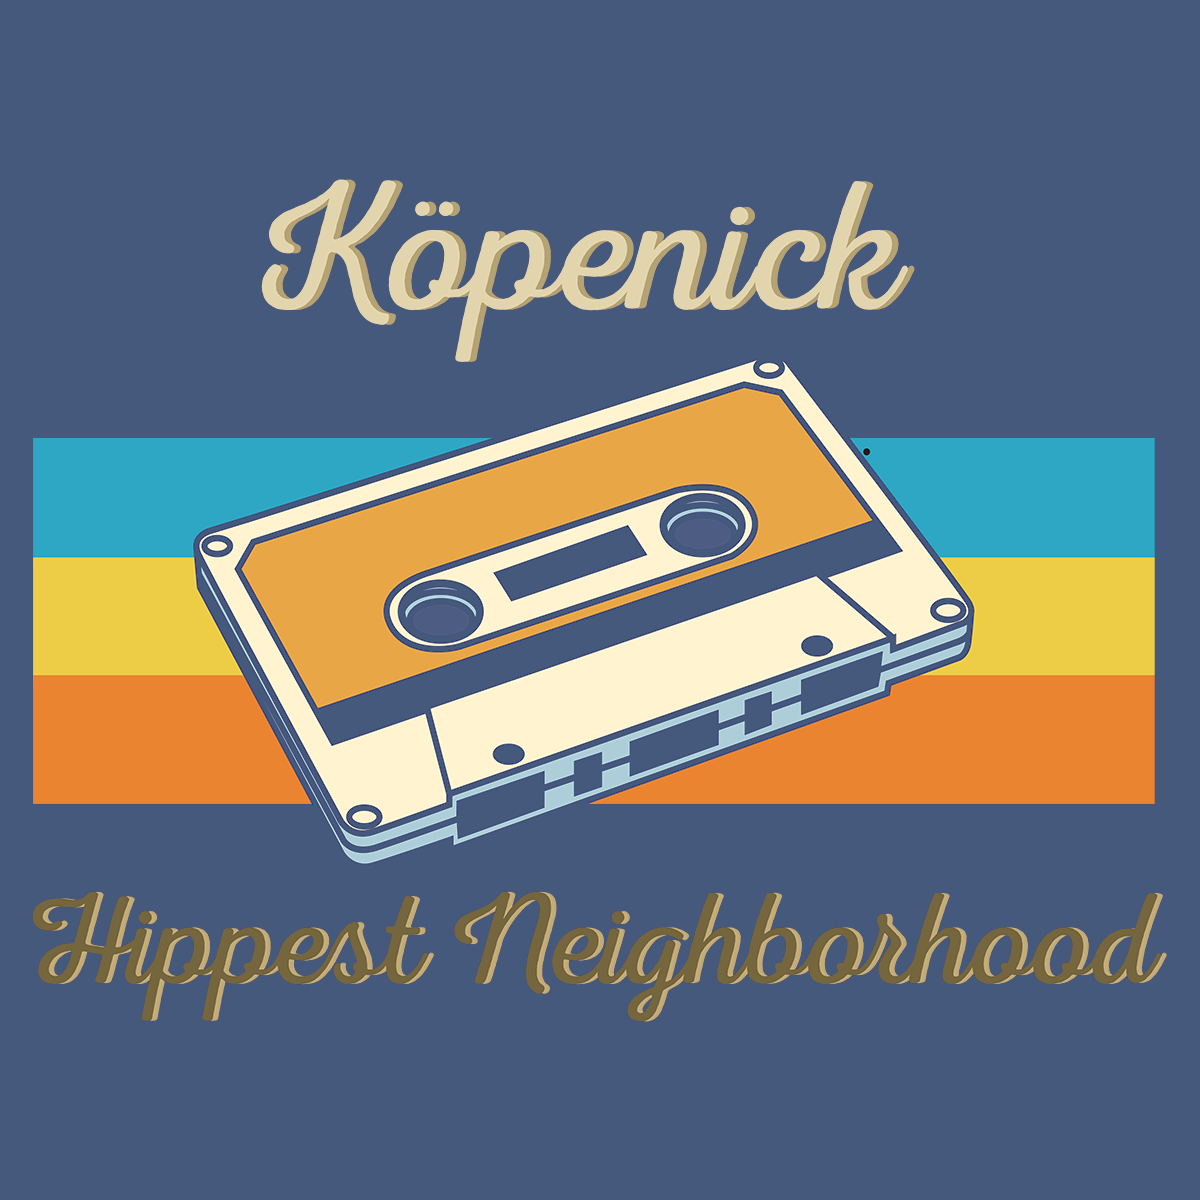 Köpenick Hippest Neighborhood